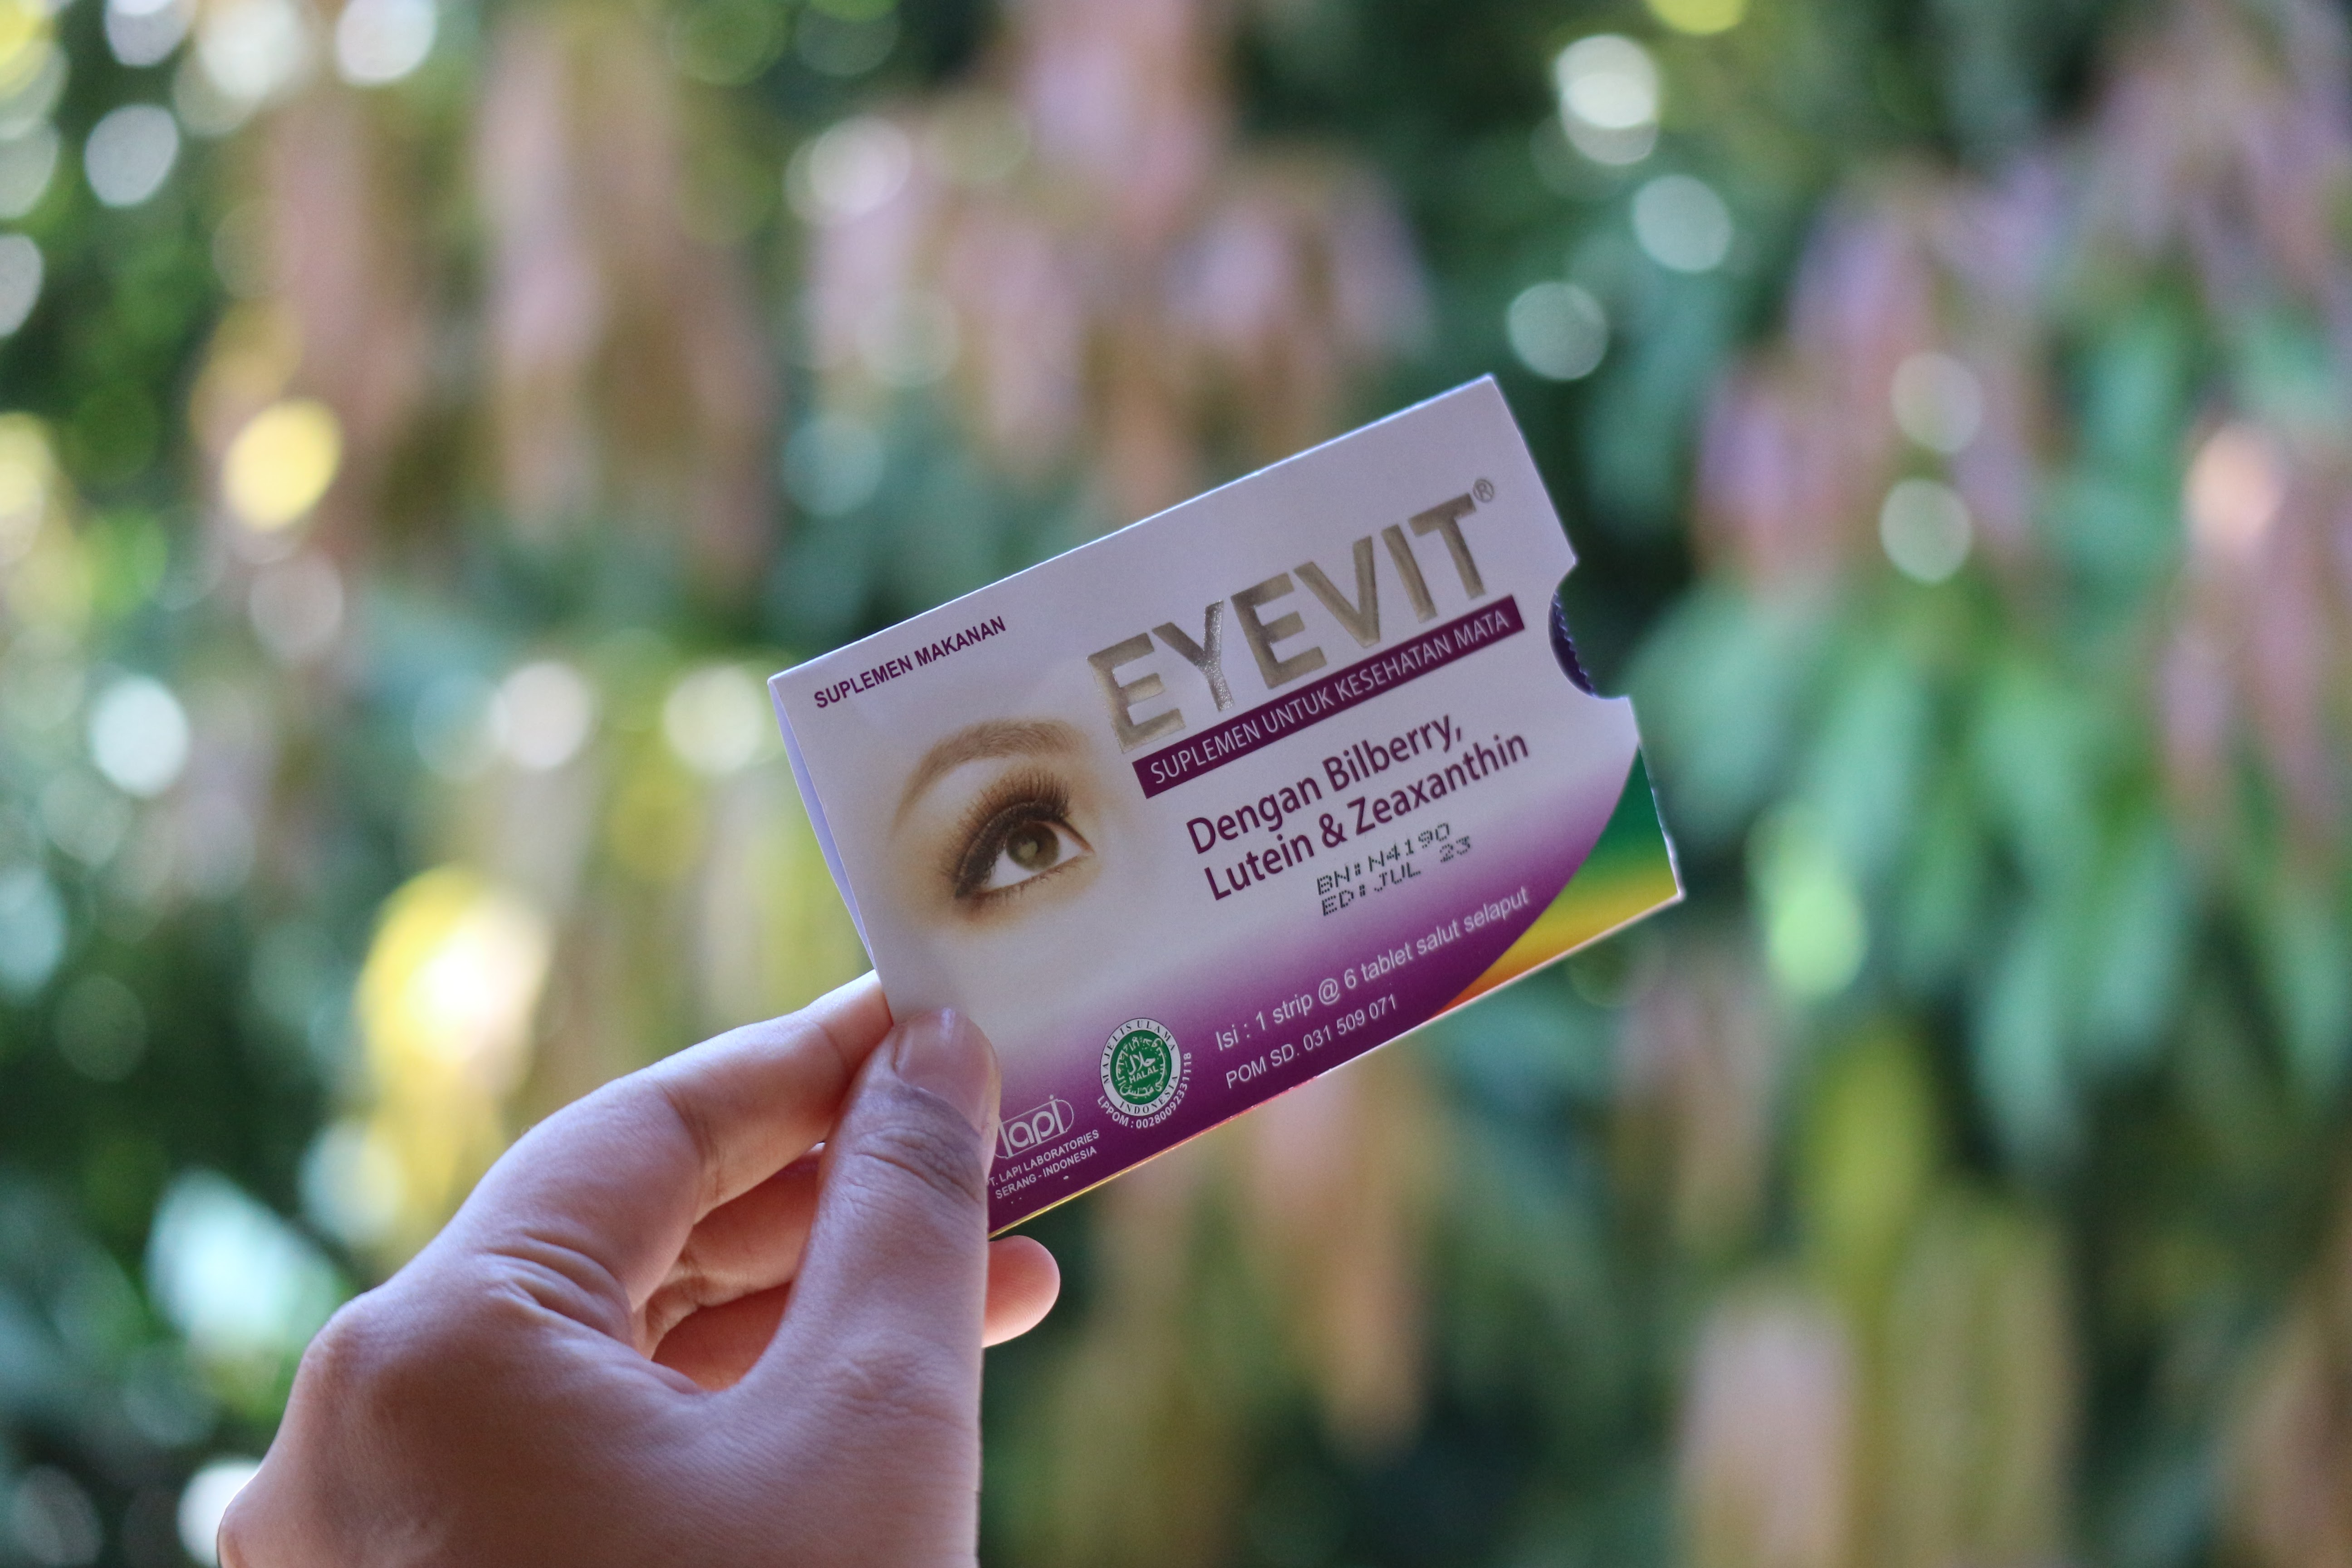 Suplemen Eyevit dalam bentuk Eyevit Tablet dapat dikonsumsi oleh dewasa setiap hari untuk memelihara kesehatan mata